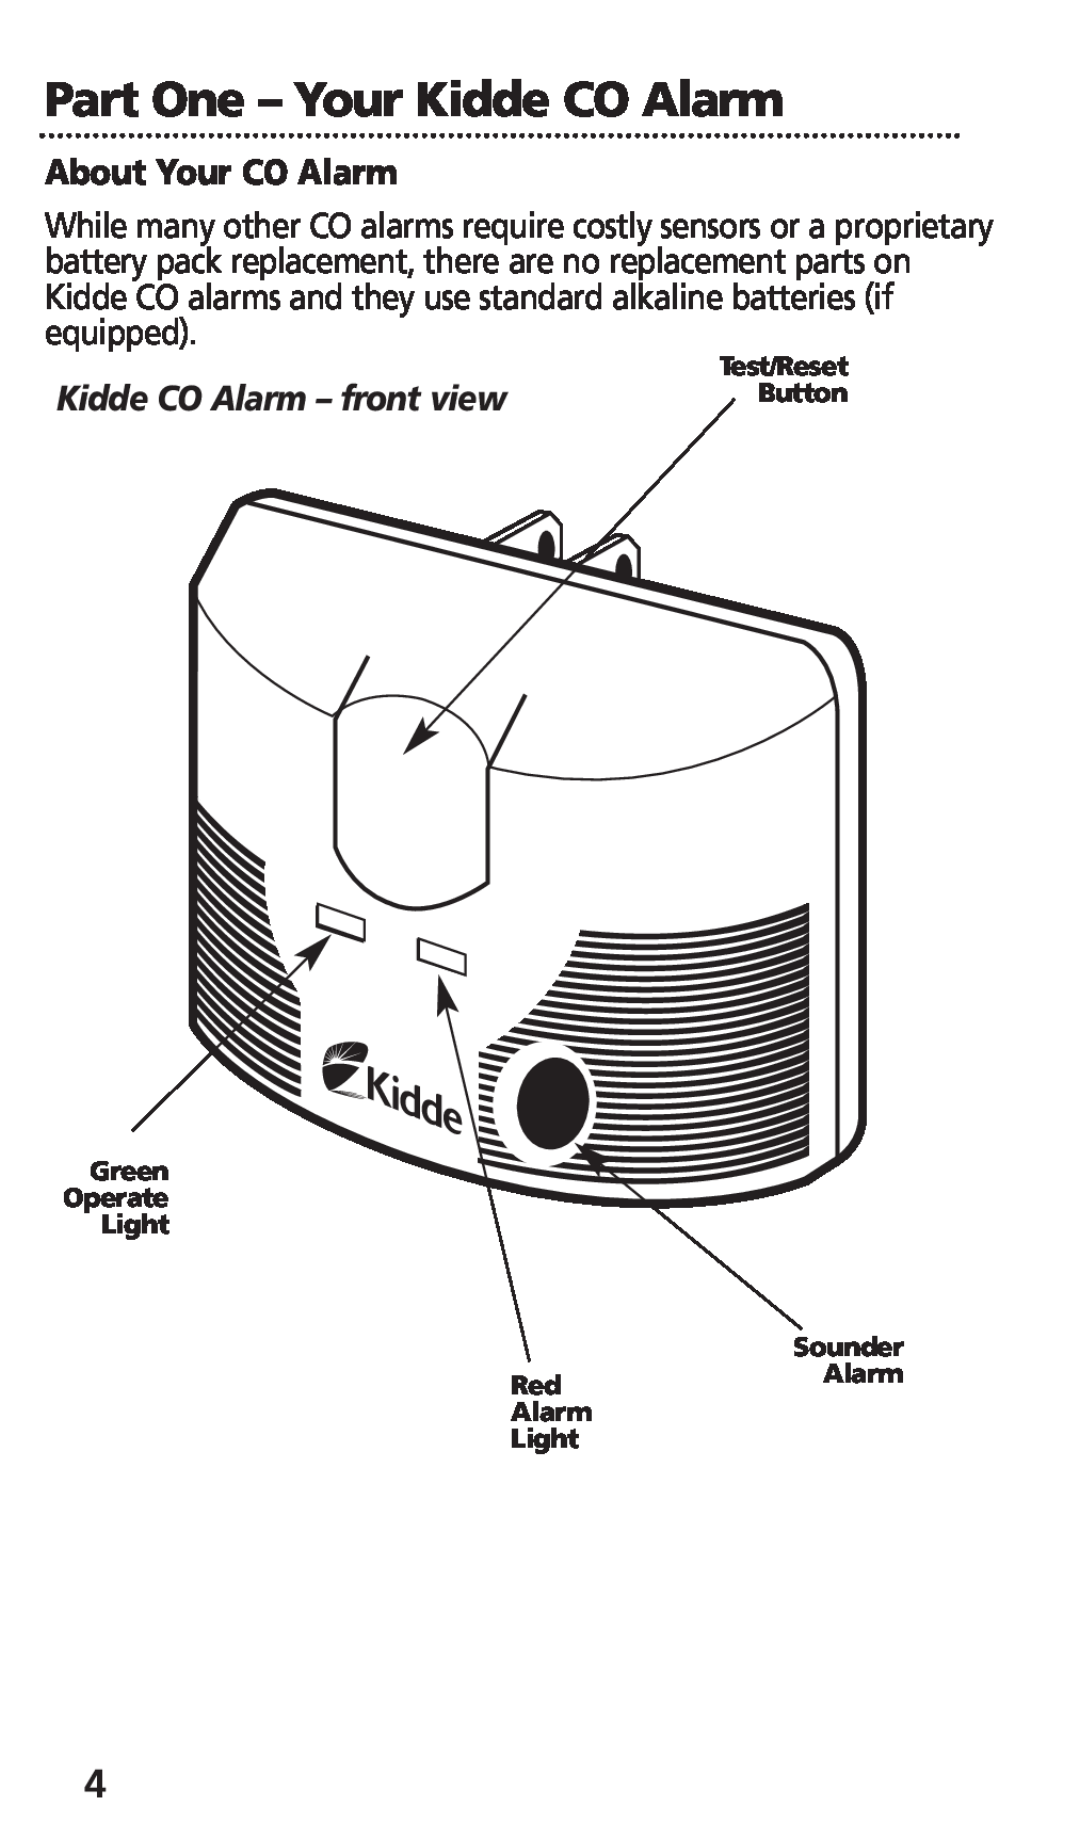 Kidde KN-COB-DP-H Part One - Your Kidde CO Alarm, About Your CO Alarm, Kidde CO Alarm - front view, Test/Reset, Button 